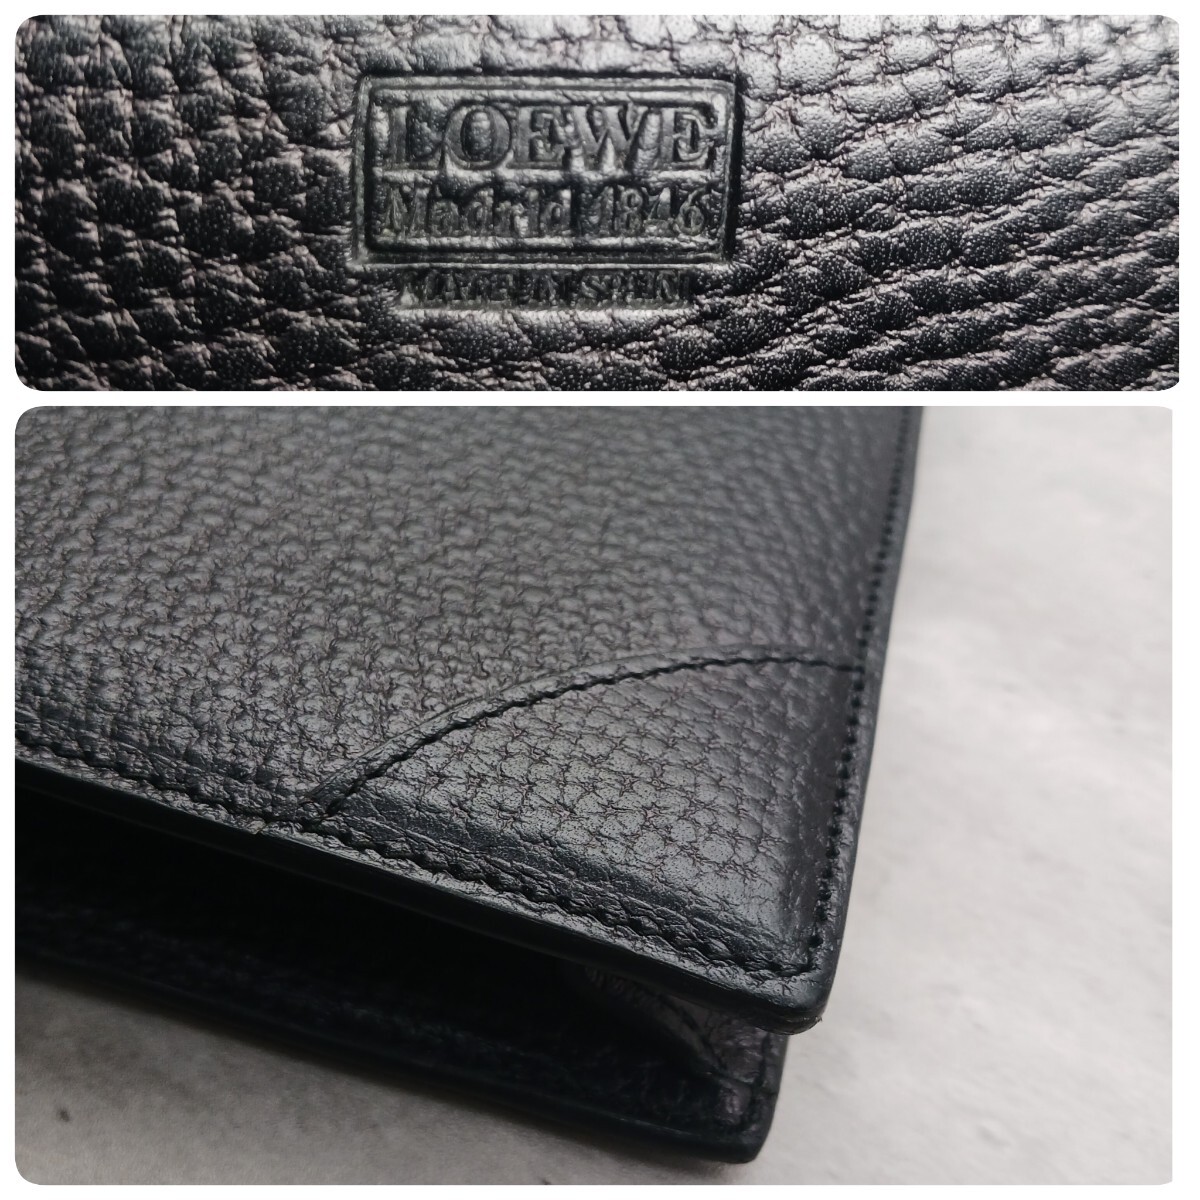  превосходный товар LOEWE Loewe портфель ручная сумочка портфель все кожа Gold металлические принадлежности Logo печать дыра грамм A4 возможно черный чёрный 